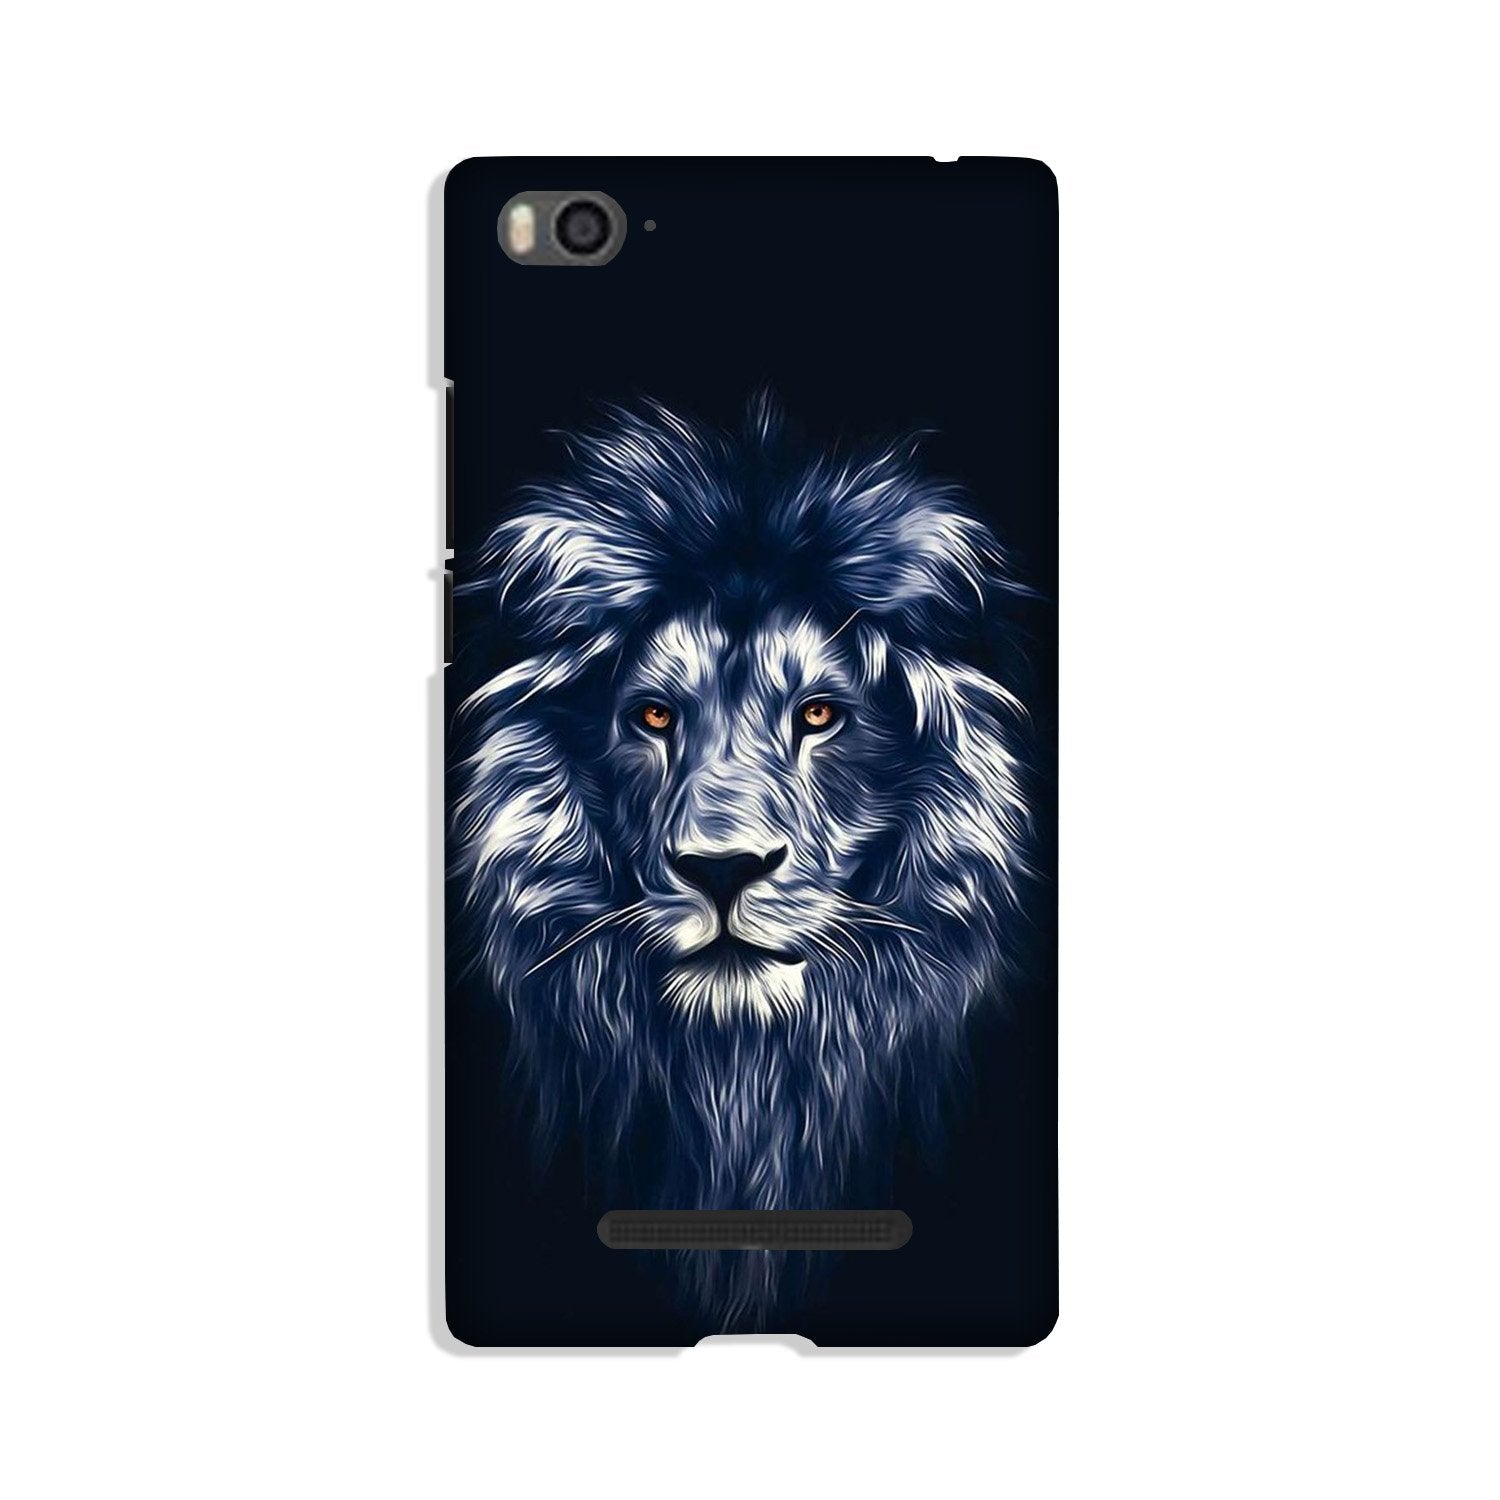 Lion Case for Xiaomi Redmi 5A (Design No. 281)